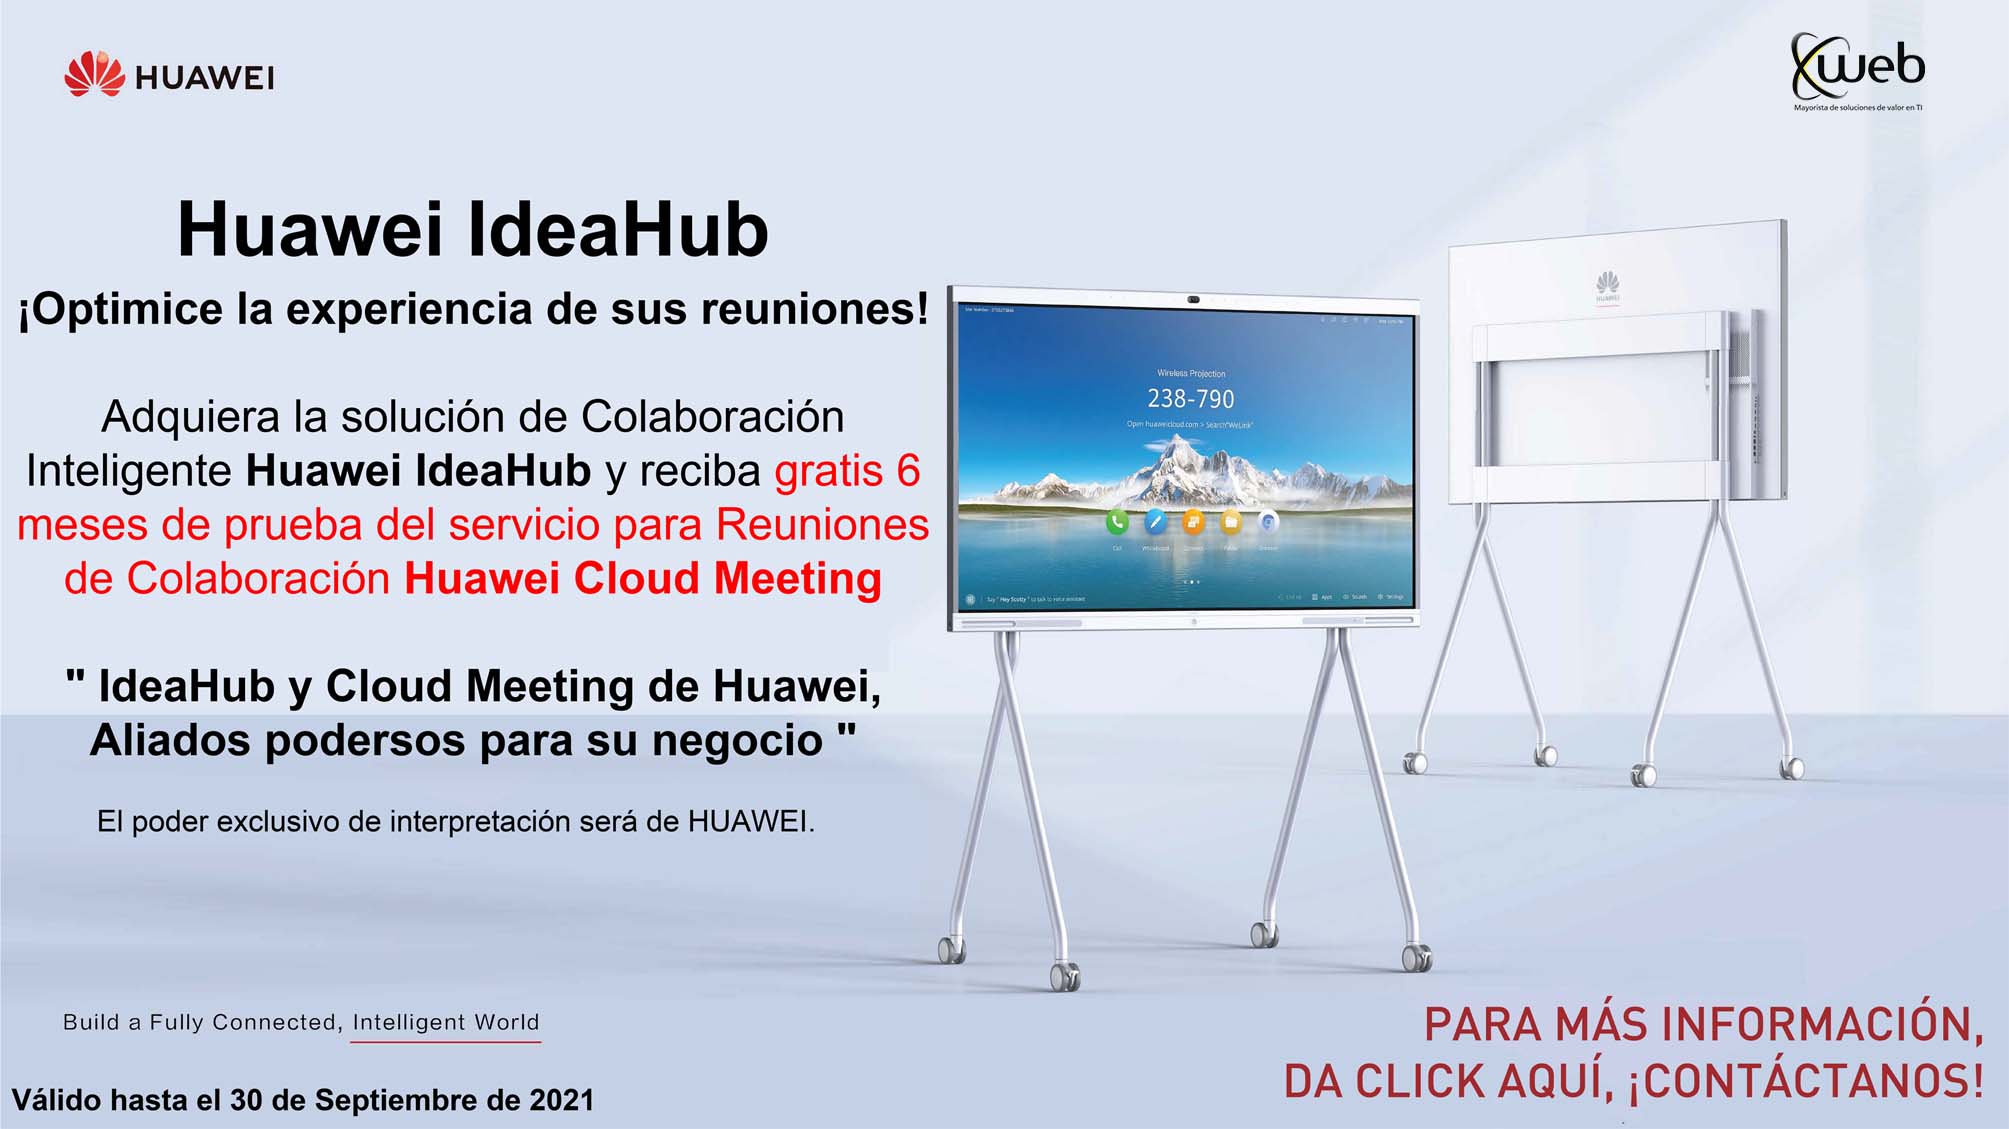 Idea Hub + Cloud Meeting